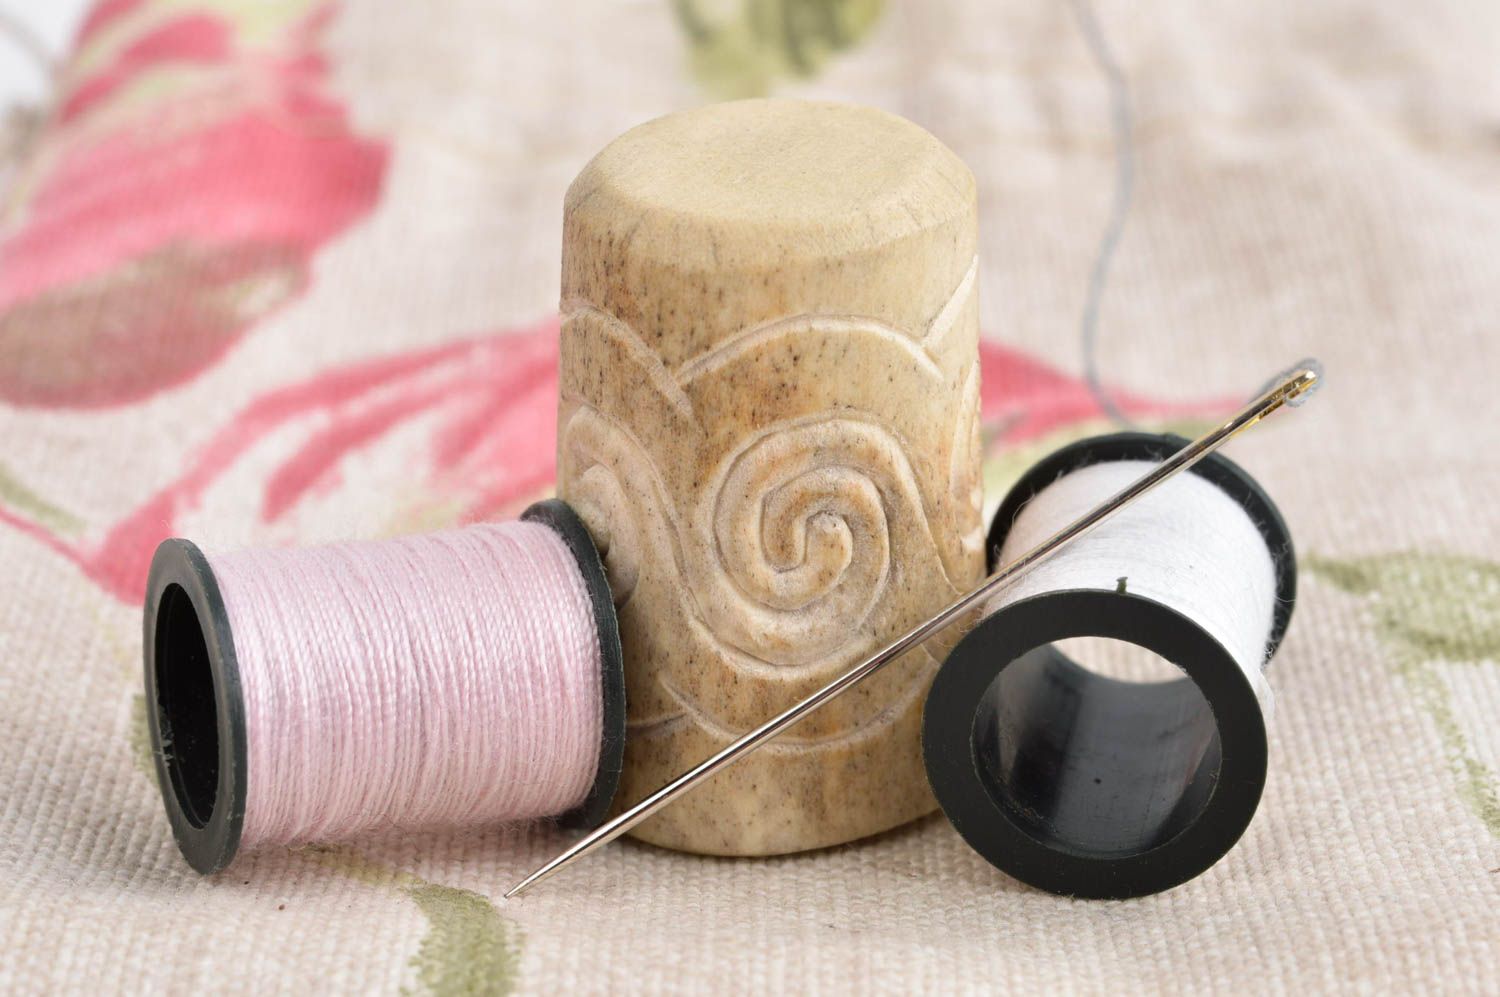 Аксессуар для шитья ручной работы красивый наперсток для шитья изделие из рога фото 1